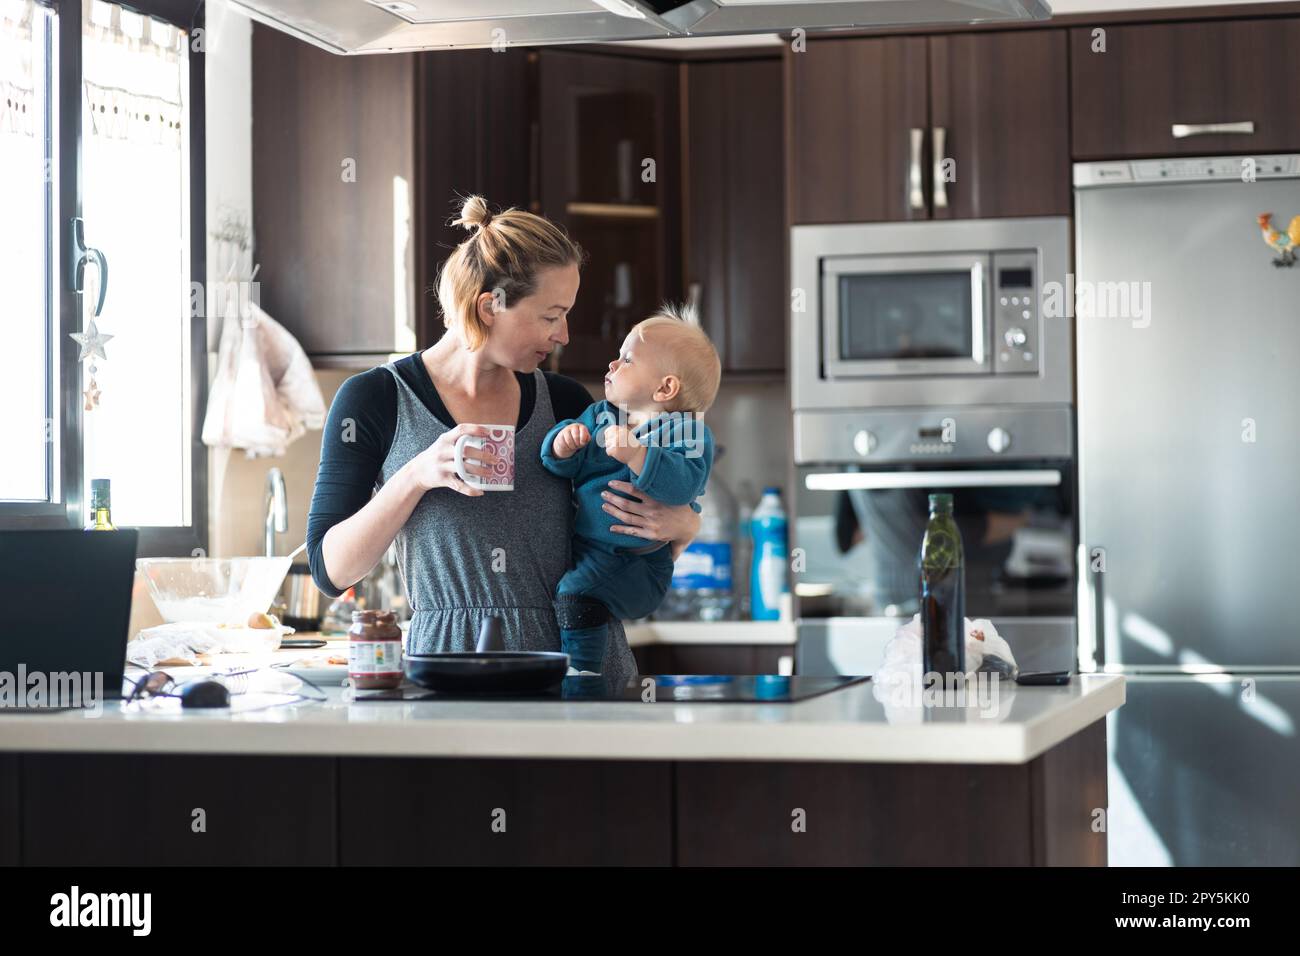 Glückliche Mutter und kleiner kleiner Junge, die zusammen Pfannkuchen zum Frühstück in der Hausküche machen. Familie, Lebensstil, häusliches Leben, Essen, gesunde Ernährung und Menschen Konzept. Stockfoto